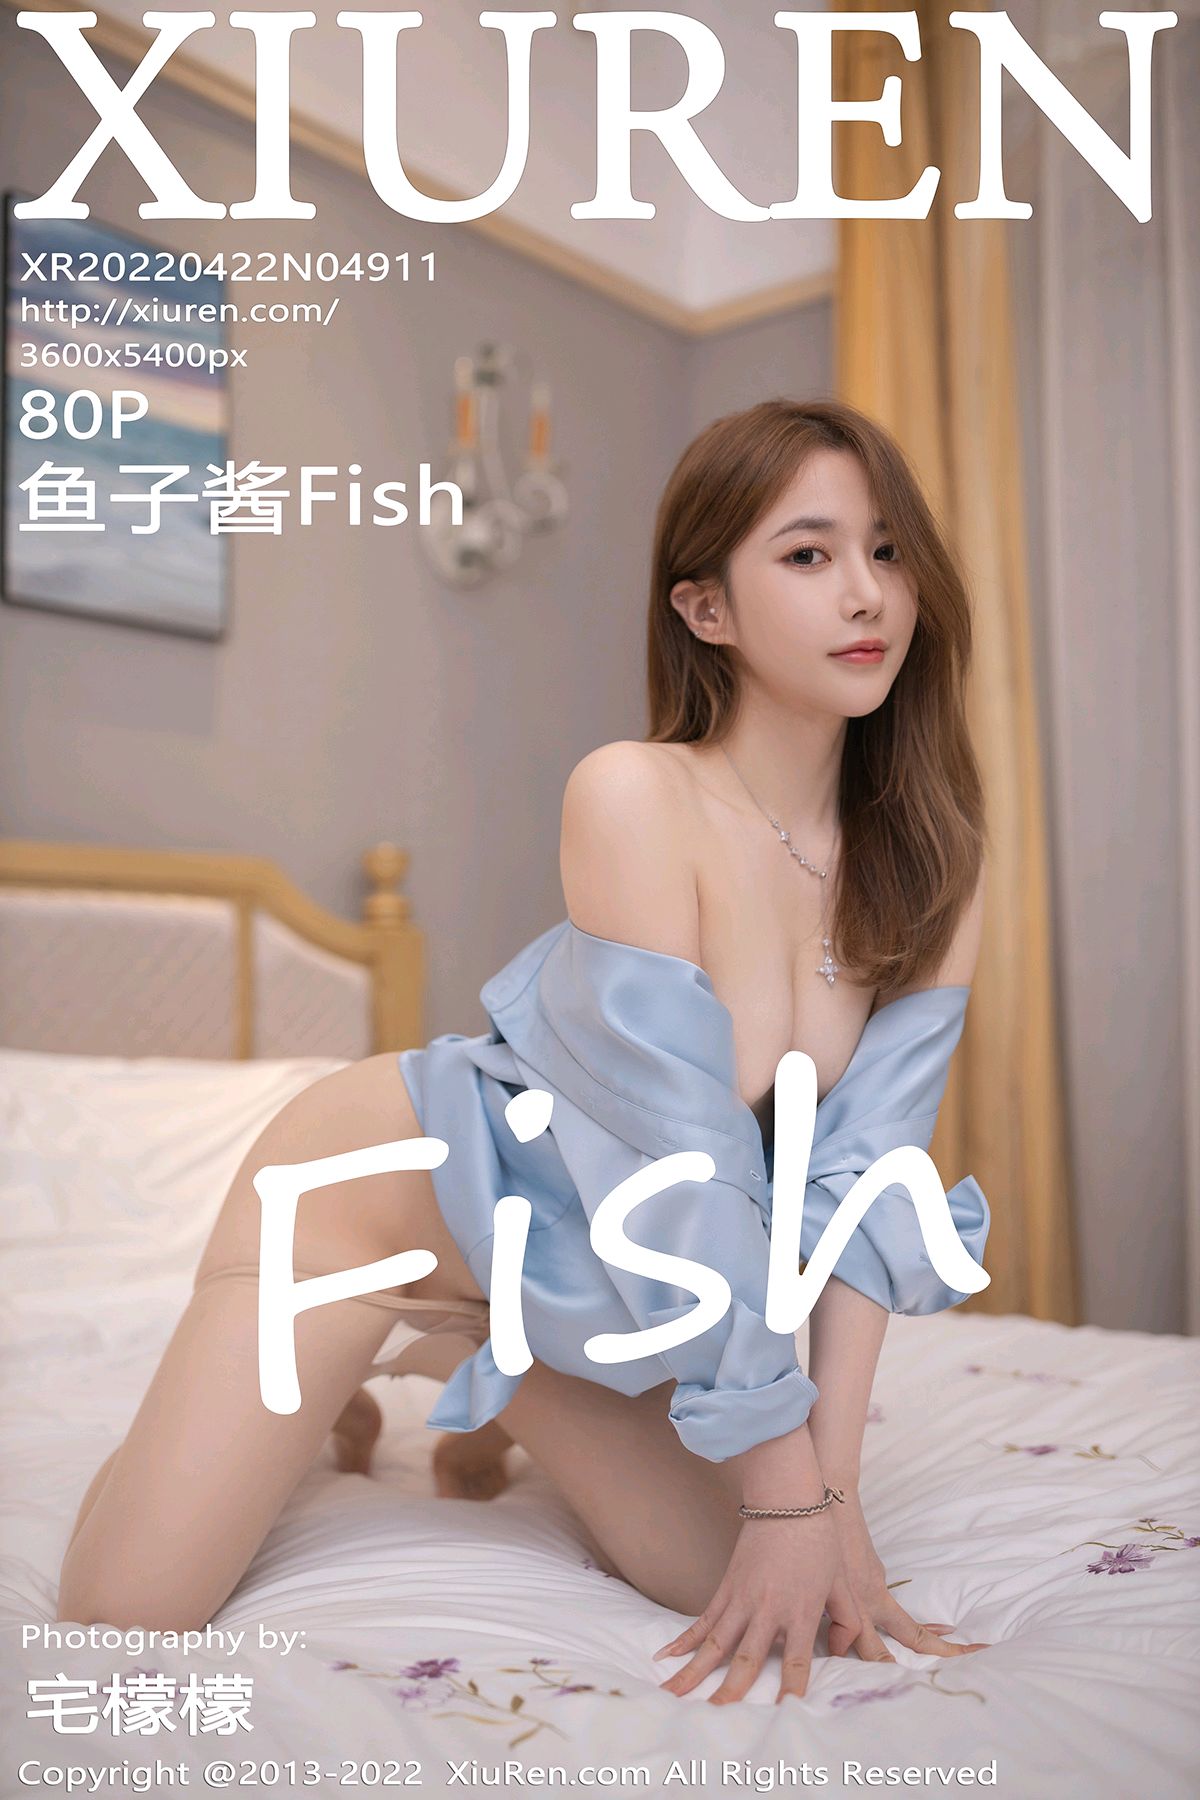 [XiuRen秀人网] 2022.04.22 No.4911 鱼子酱Fish [80P723MB]-女神汇